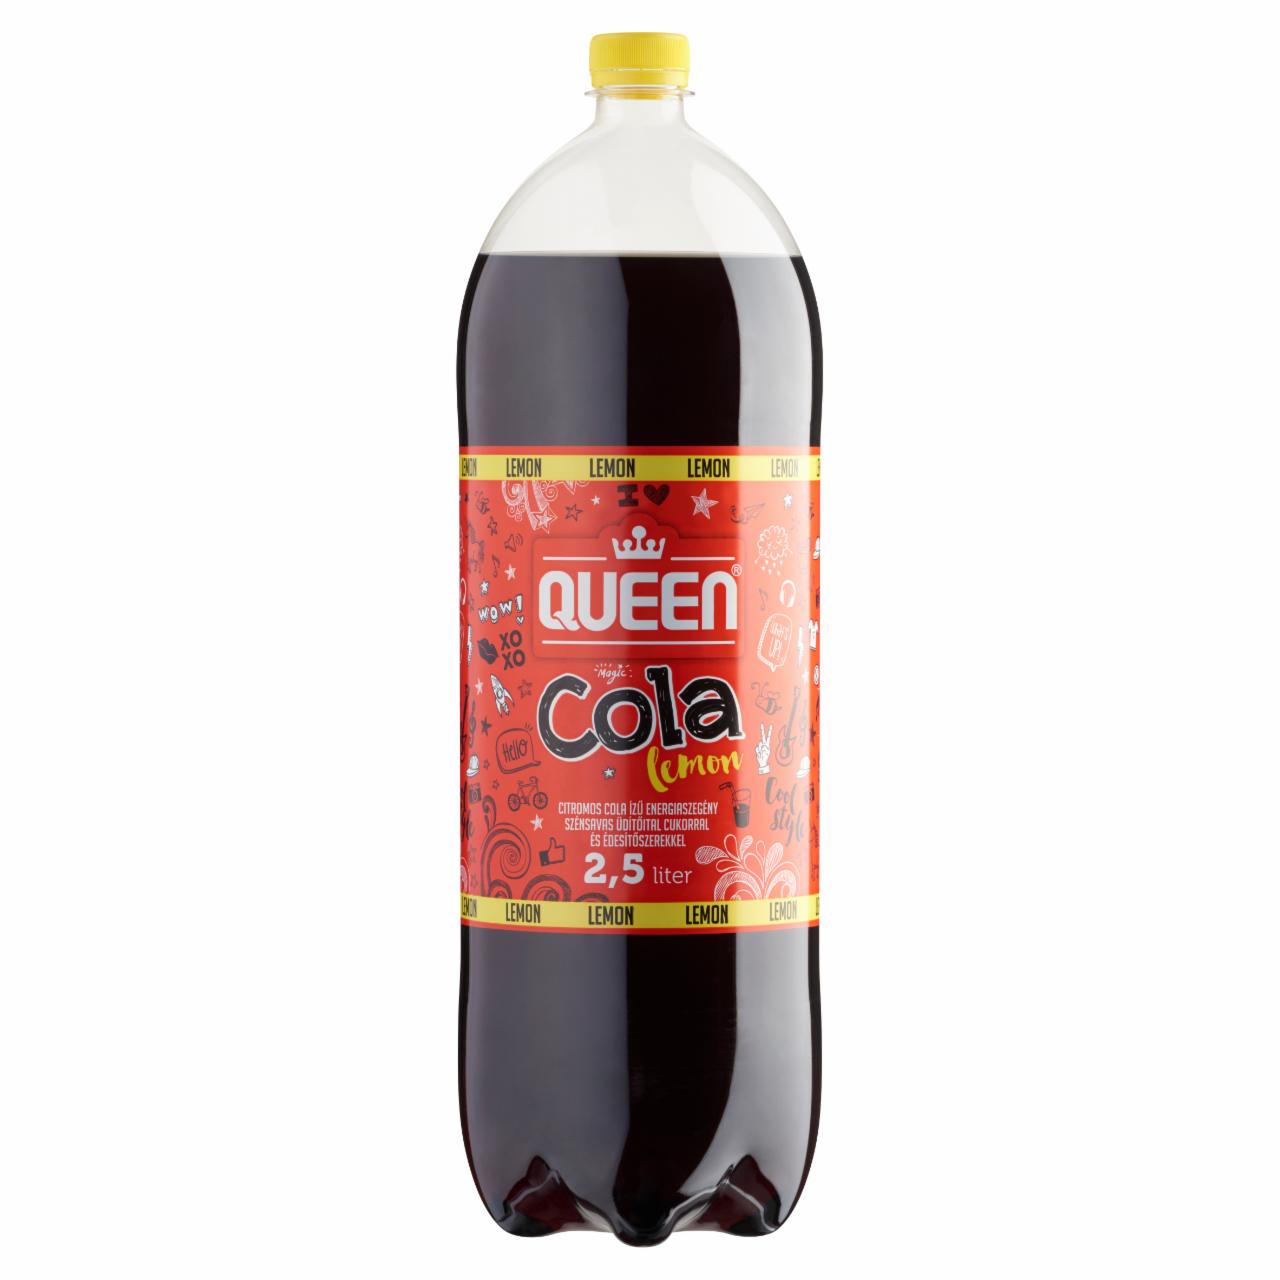 Képek - Queen citromos cola ízű energiaszegény szénsavas üdítőital cukorral és édesítőszerekkel 2,5 l